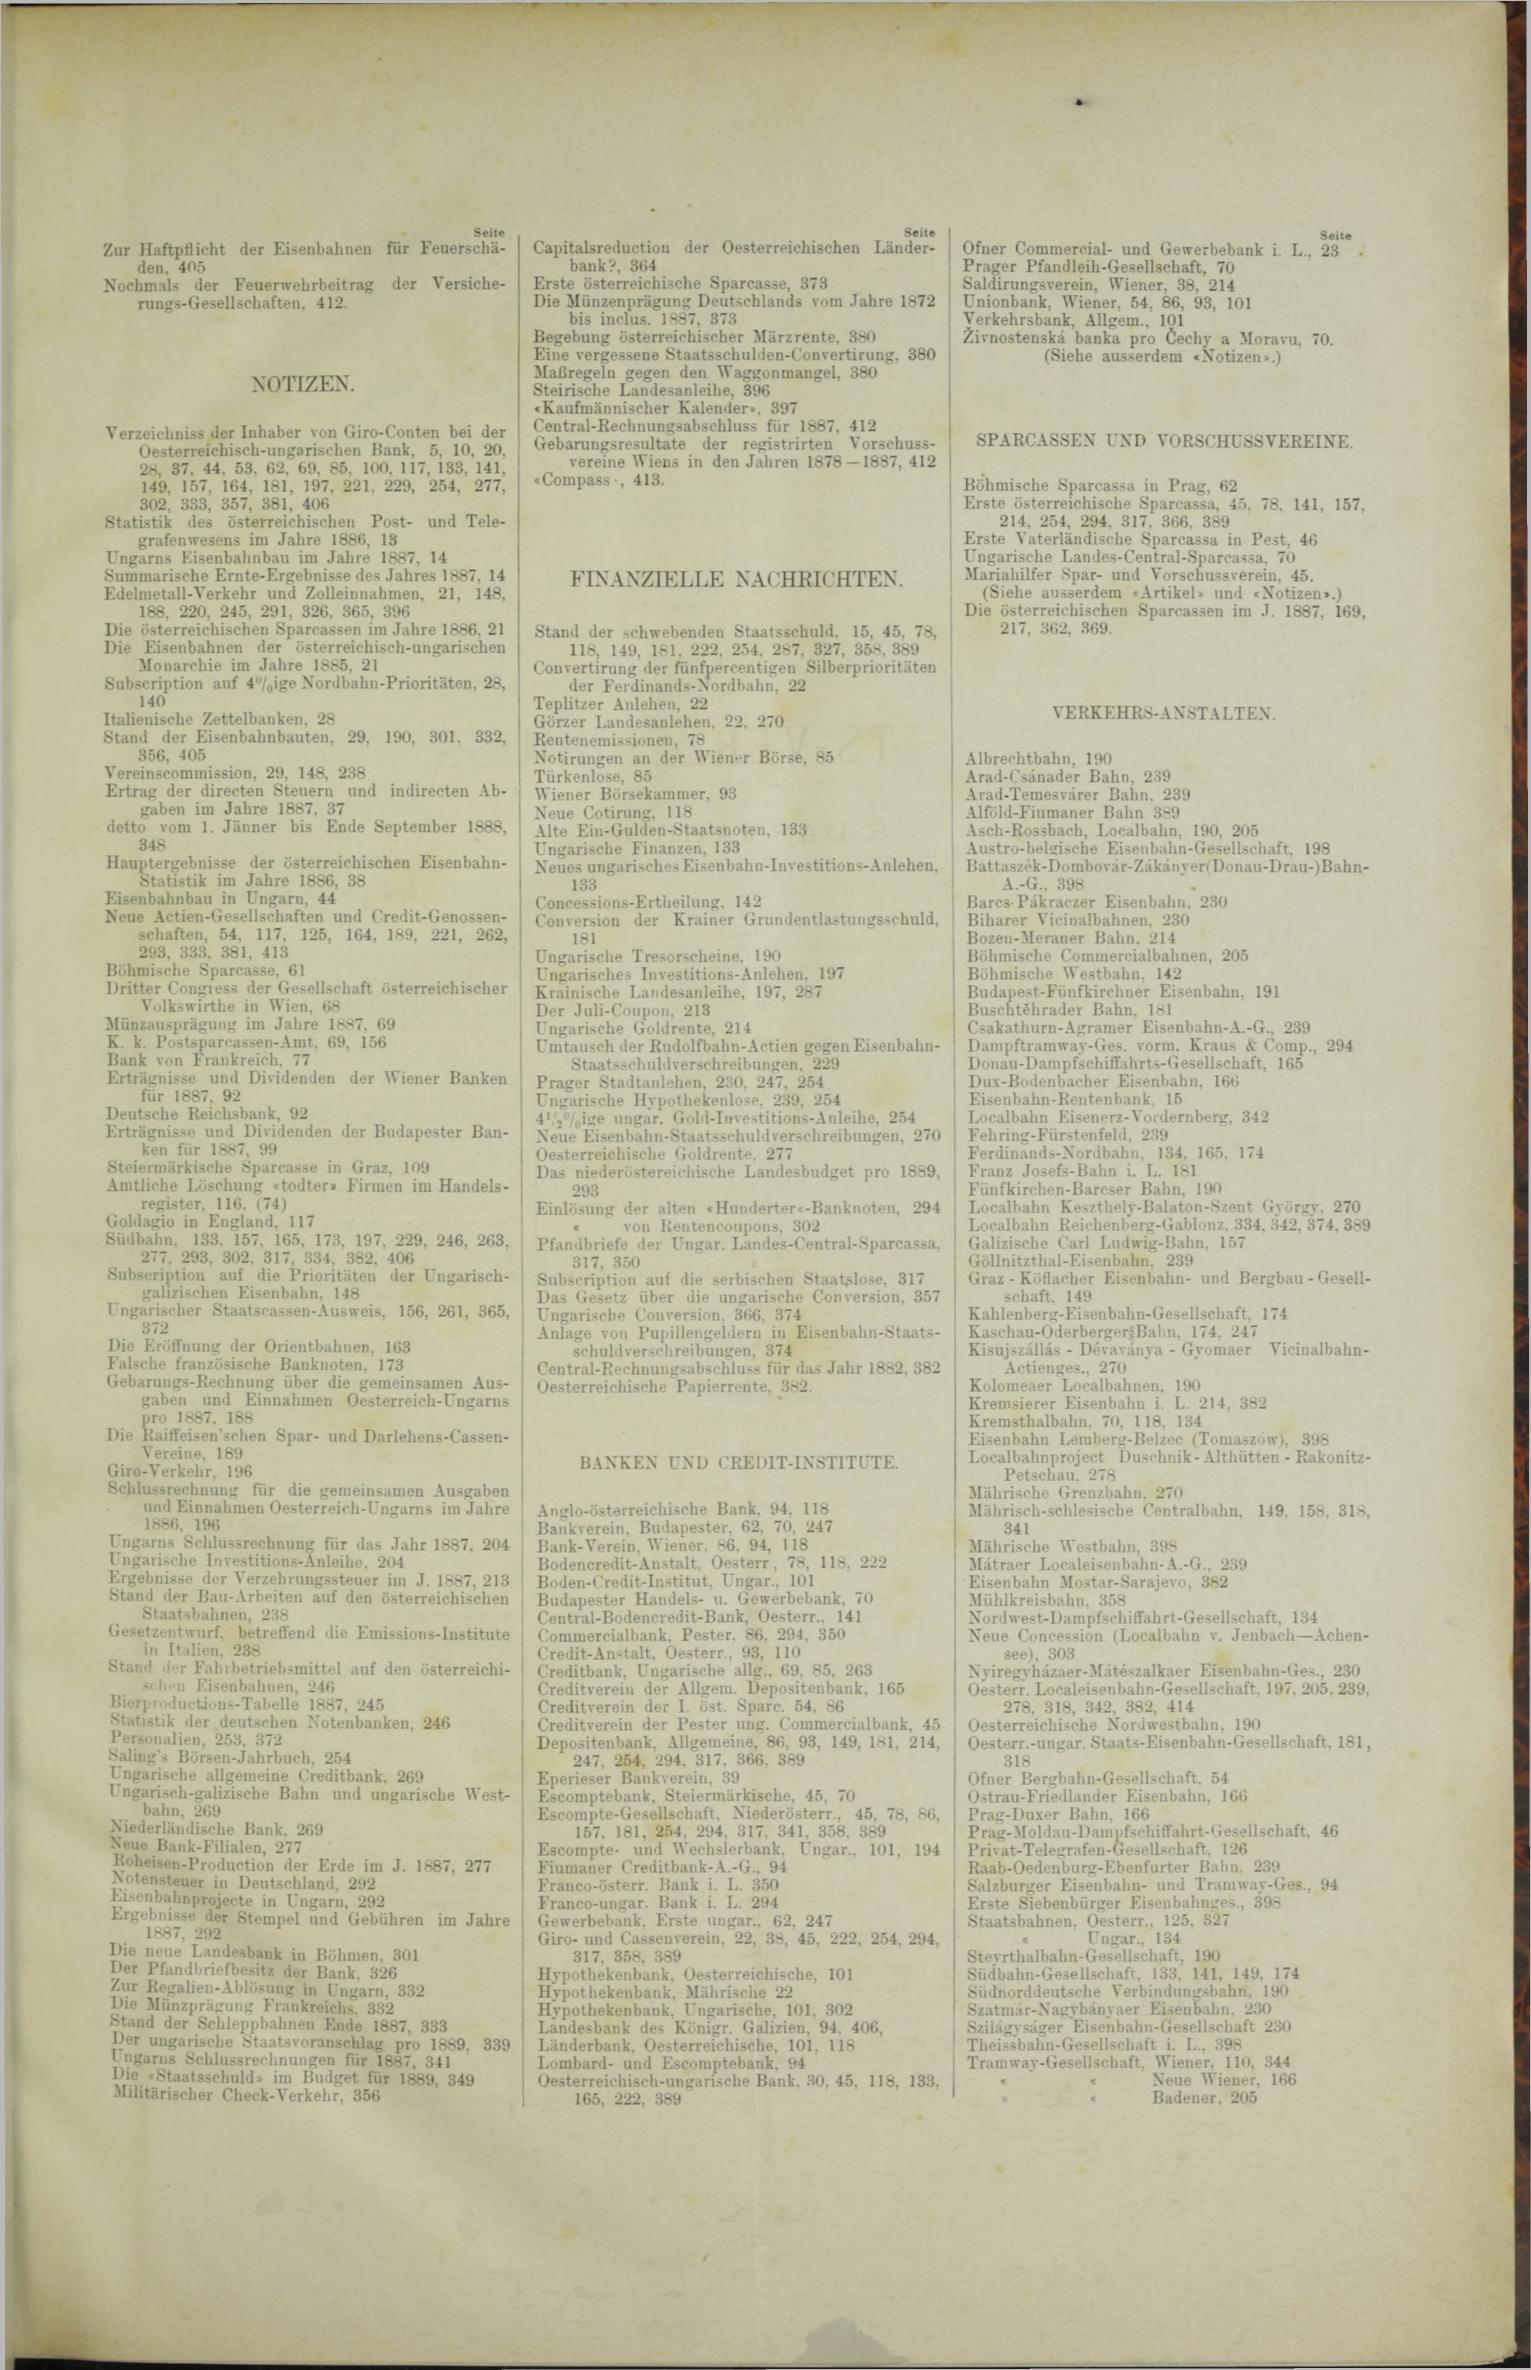 Der Tresor 12.07.1888 - Seite 11